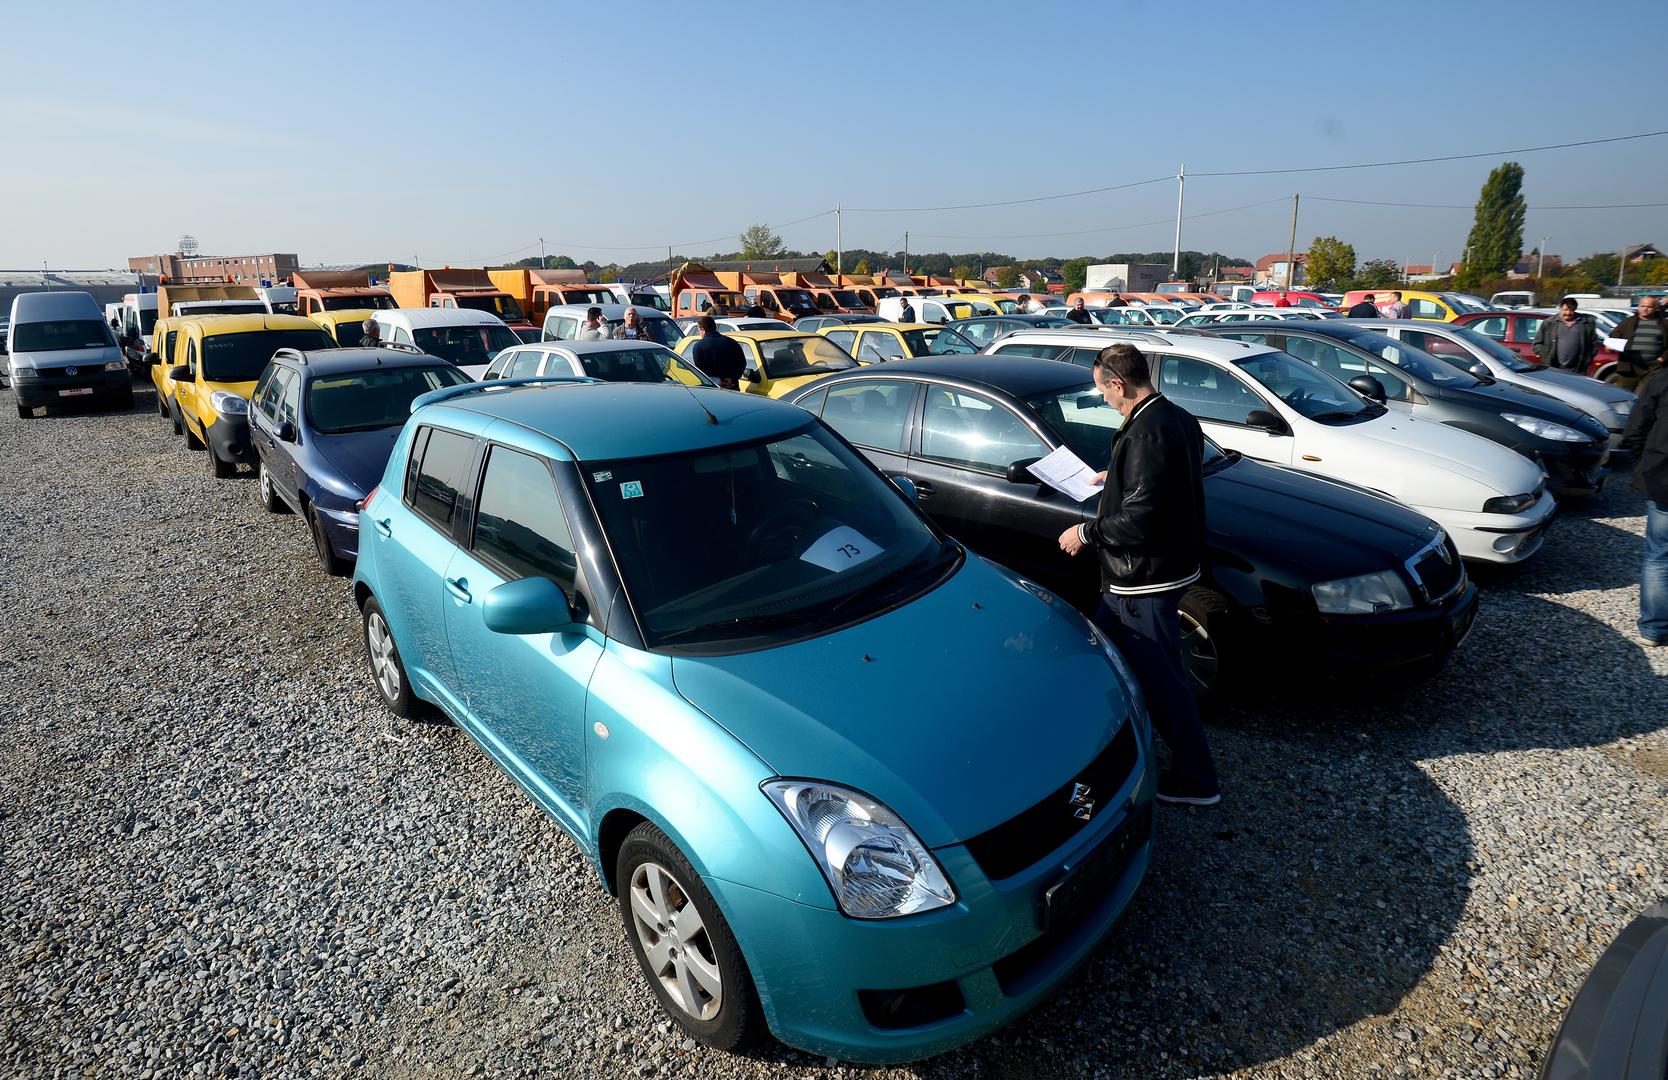 Vozila se mogu pregledati 12. i 13. listopada od 10.00 do 14.00 sati u Sesvetama, Slatinska 7, na skladištu TRCZ automobila.